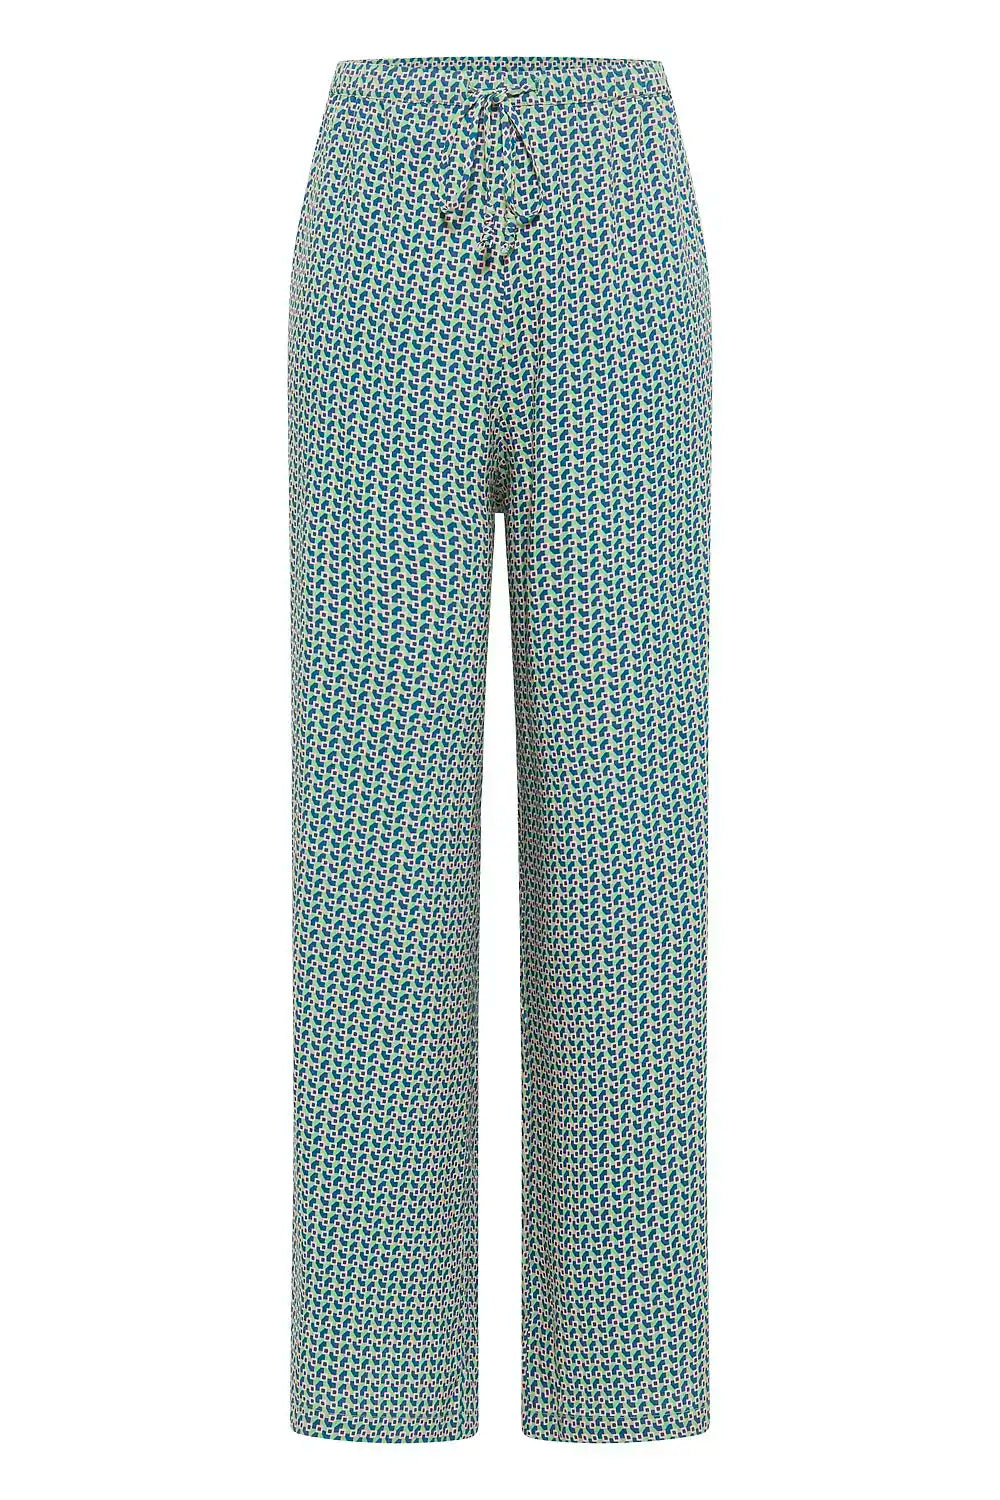 Tranquillo | Pantaloni larghi in Viscosa EcoVero™ | Abbigliamento Ecosostenibile